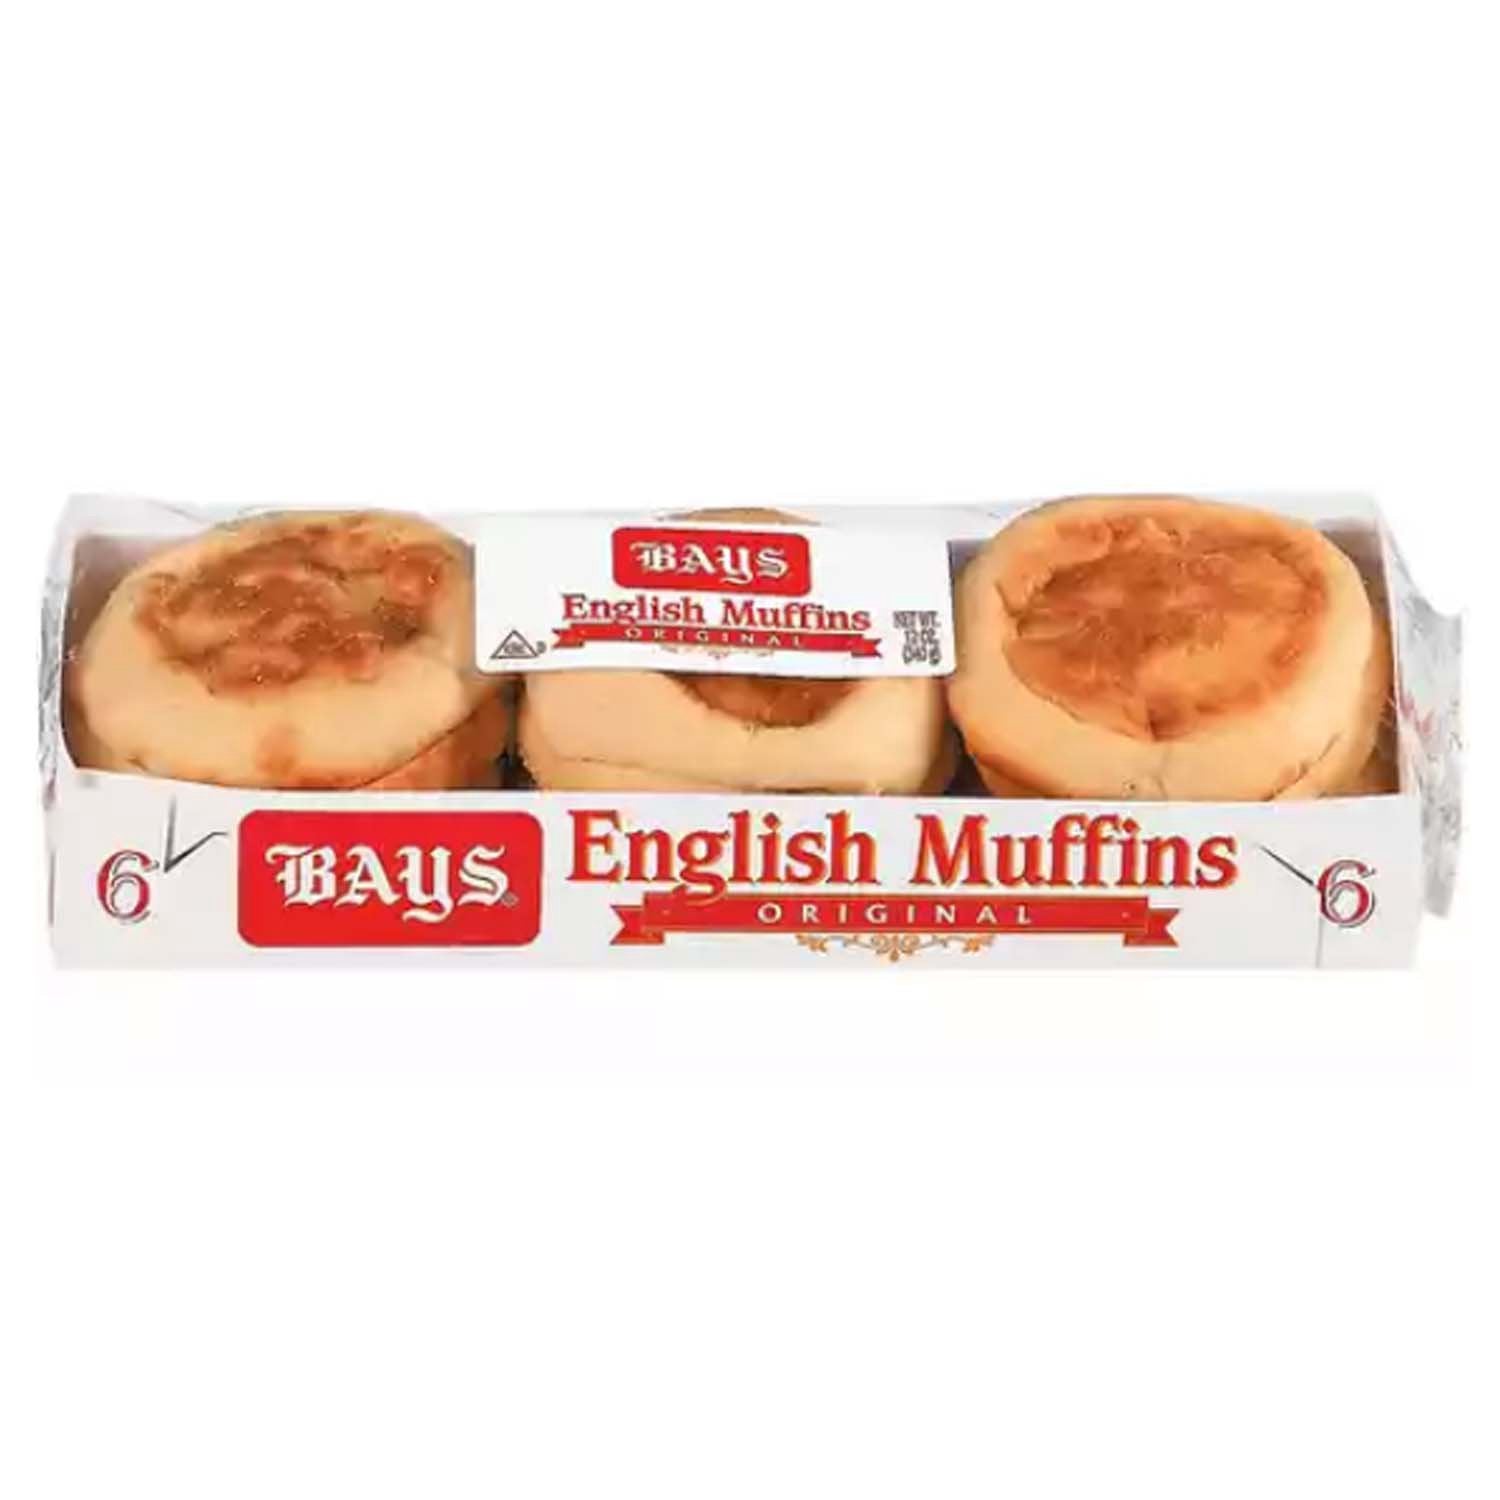 Bays English Muffins 6 ct